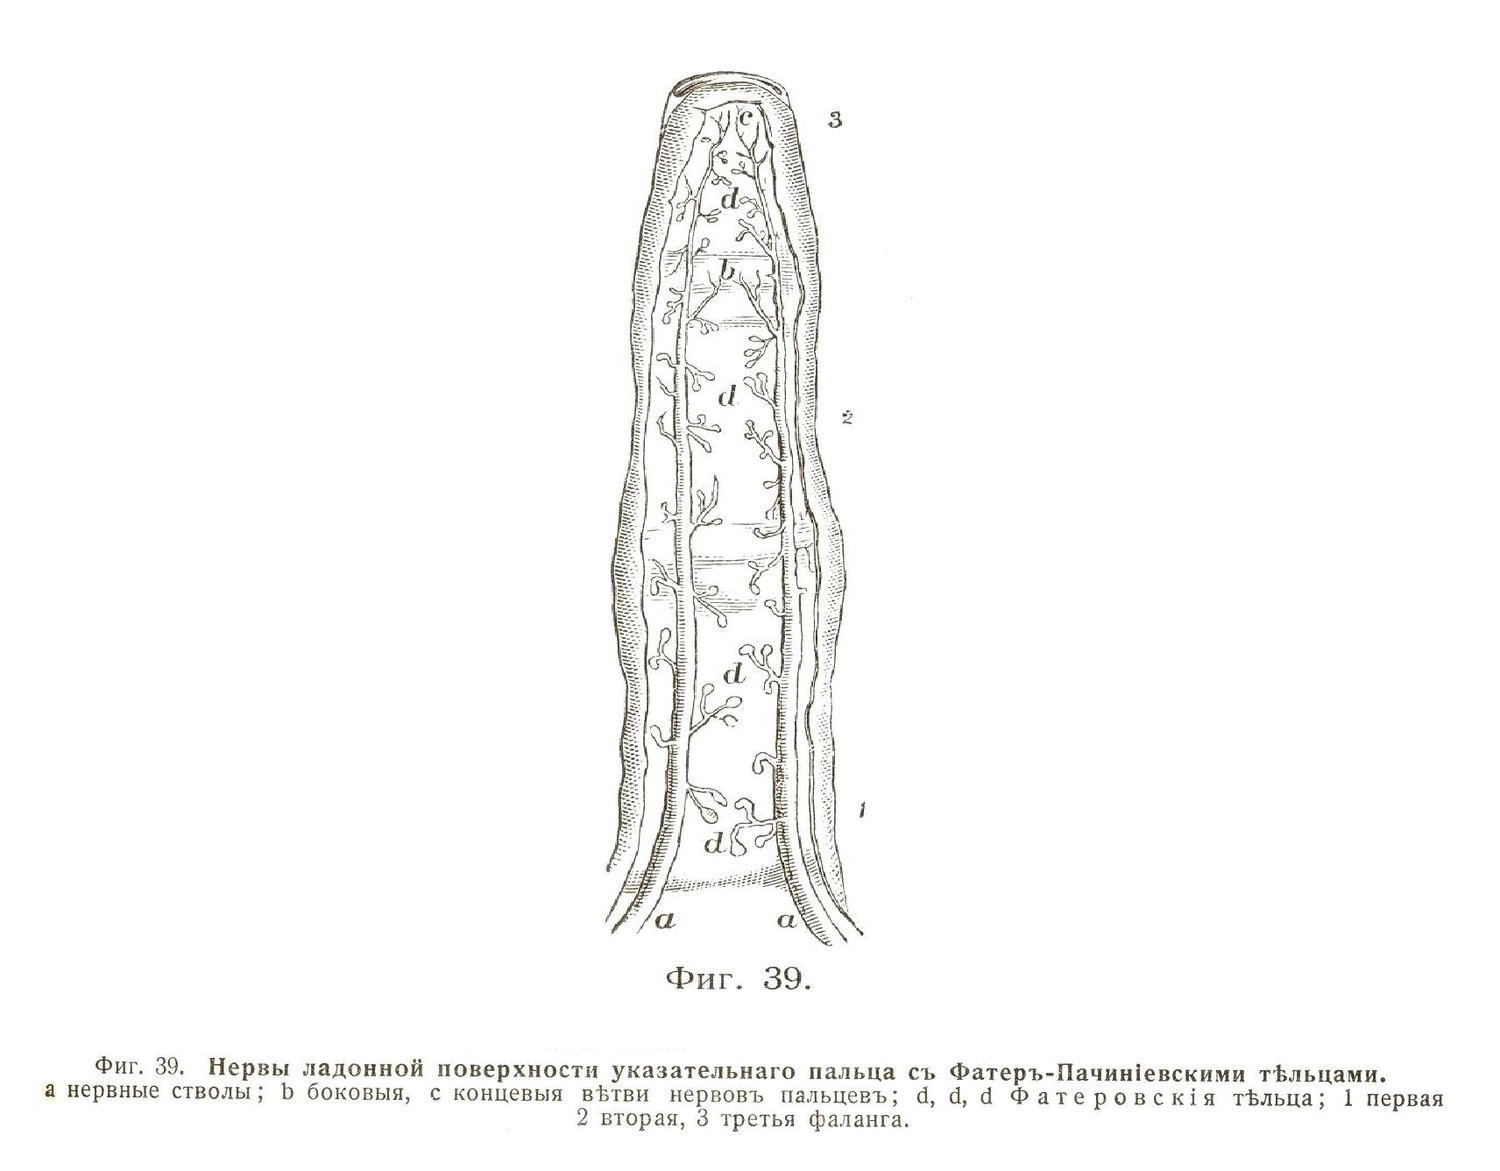 Нервы ладонной поверхности указательнаго пальца съ Фатеръ-Пачиніевскими тѣльцами.